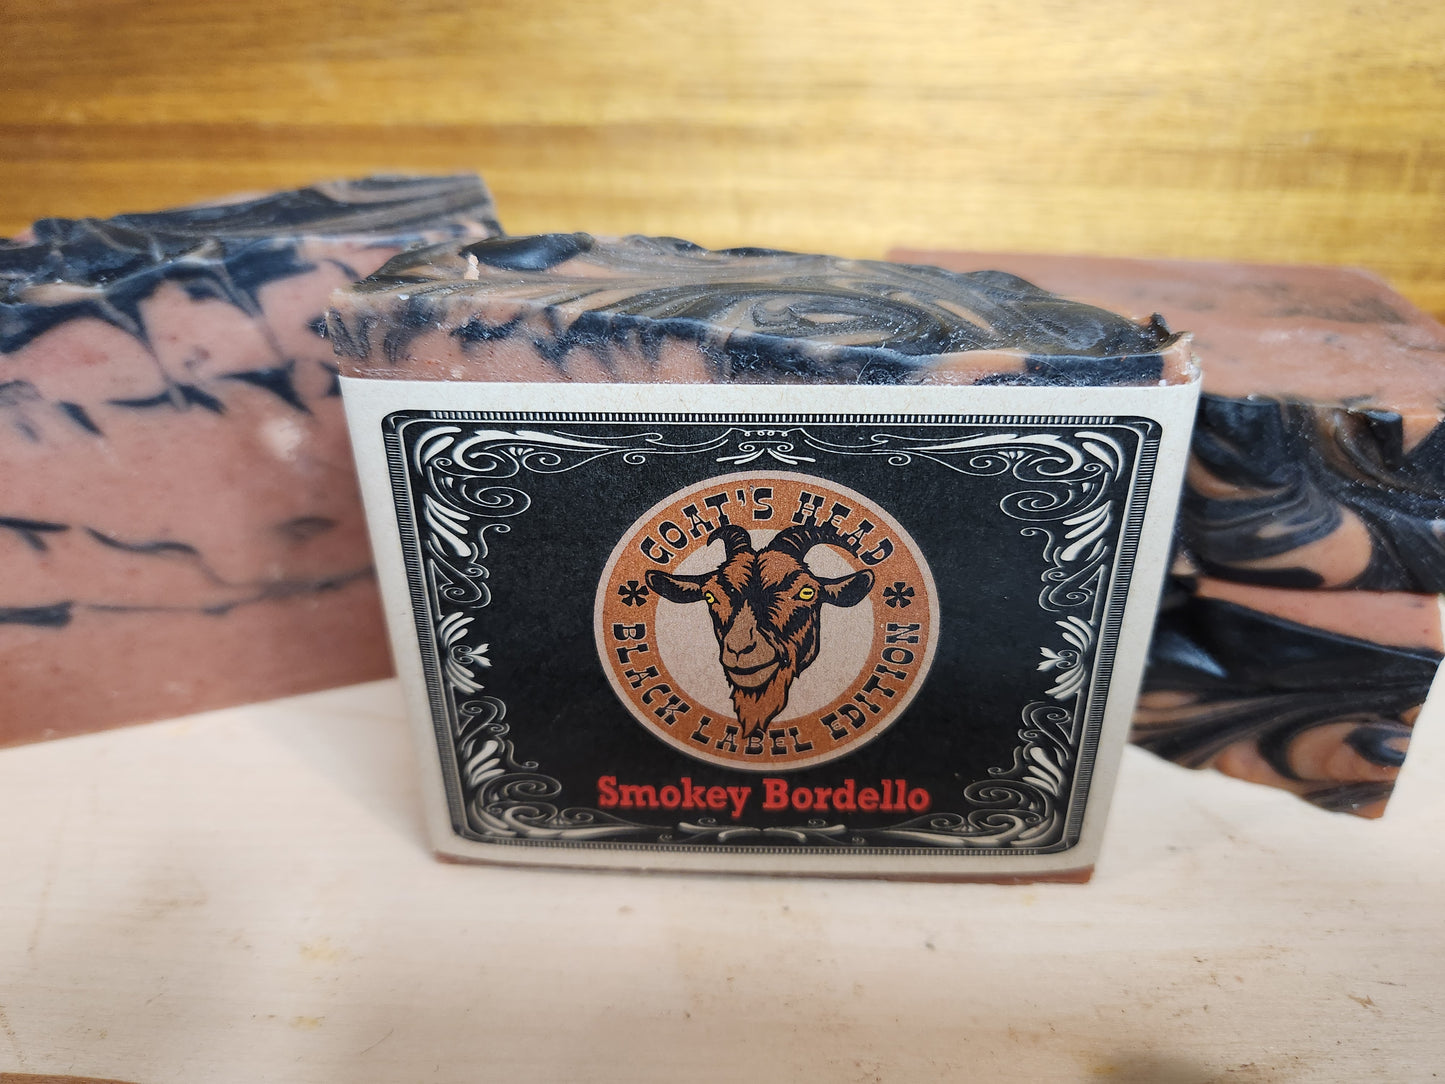 "Smokey Bordello" Goat Milk Soap